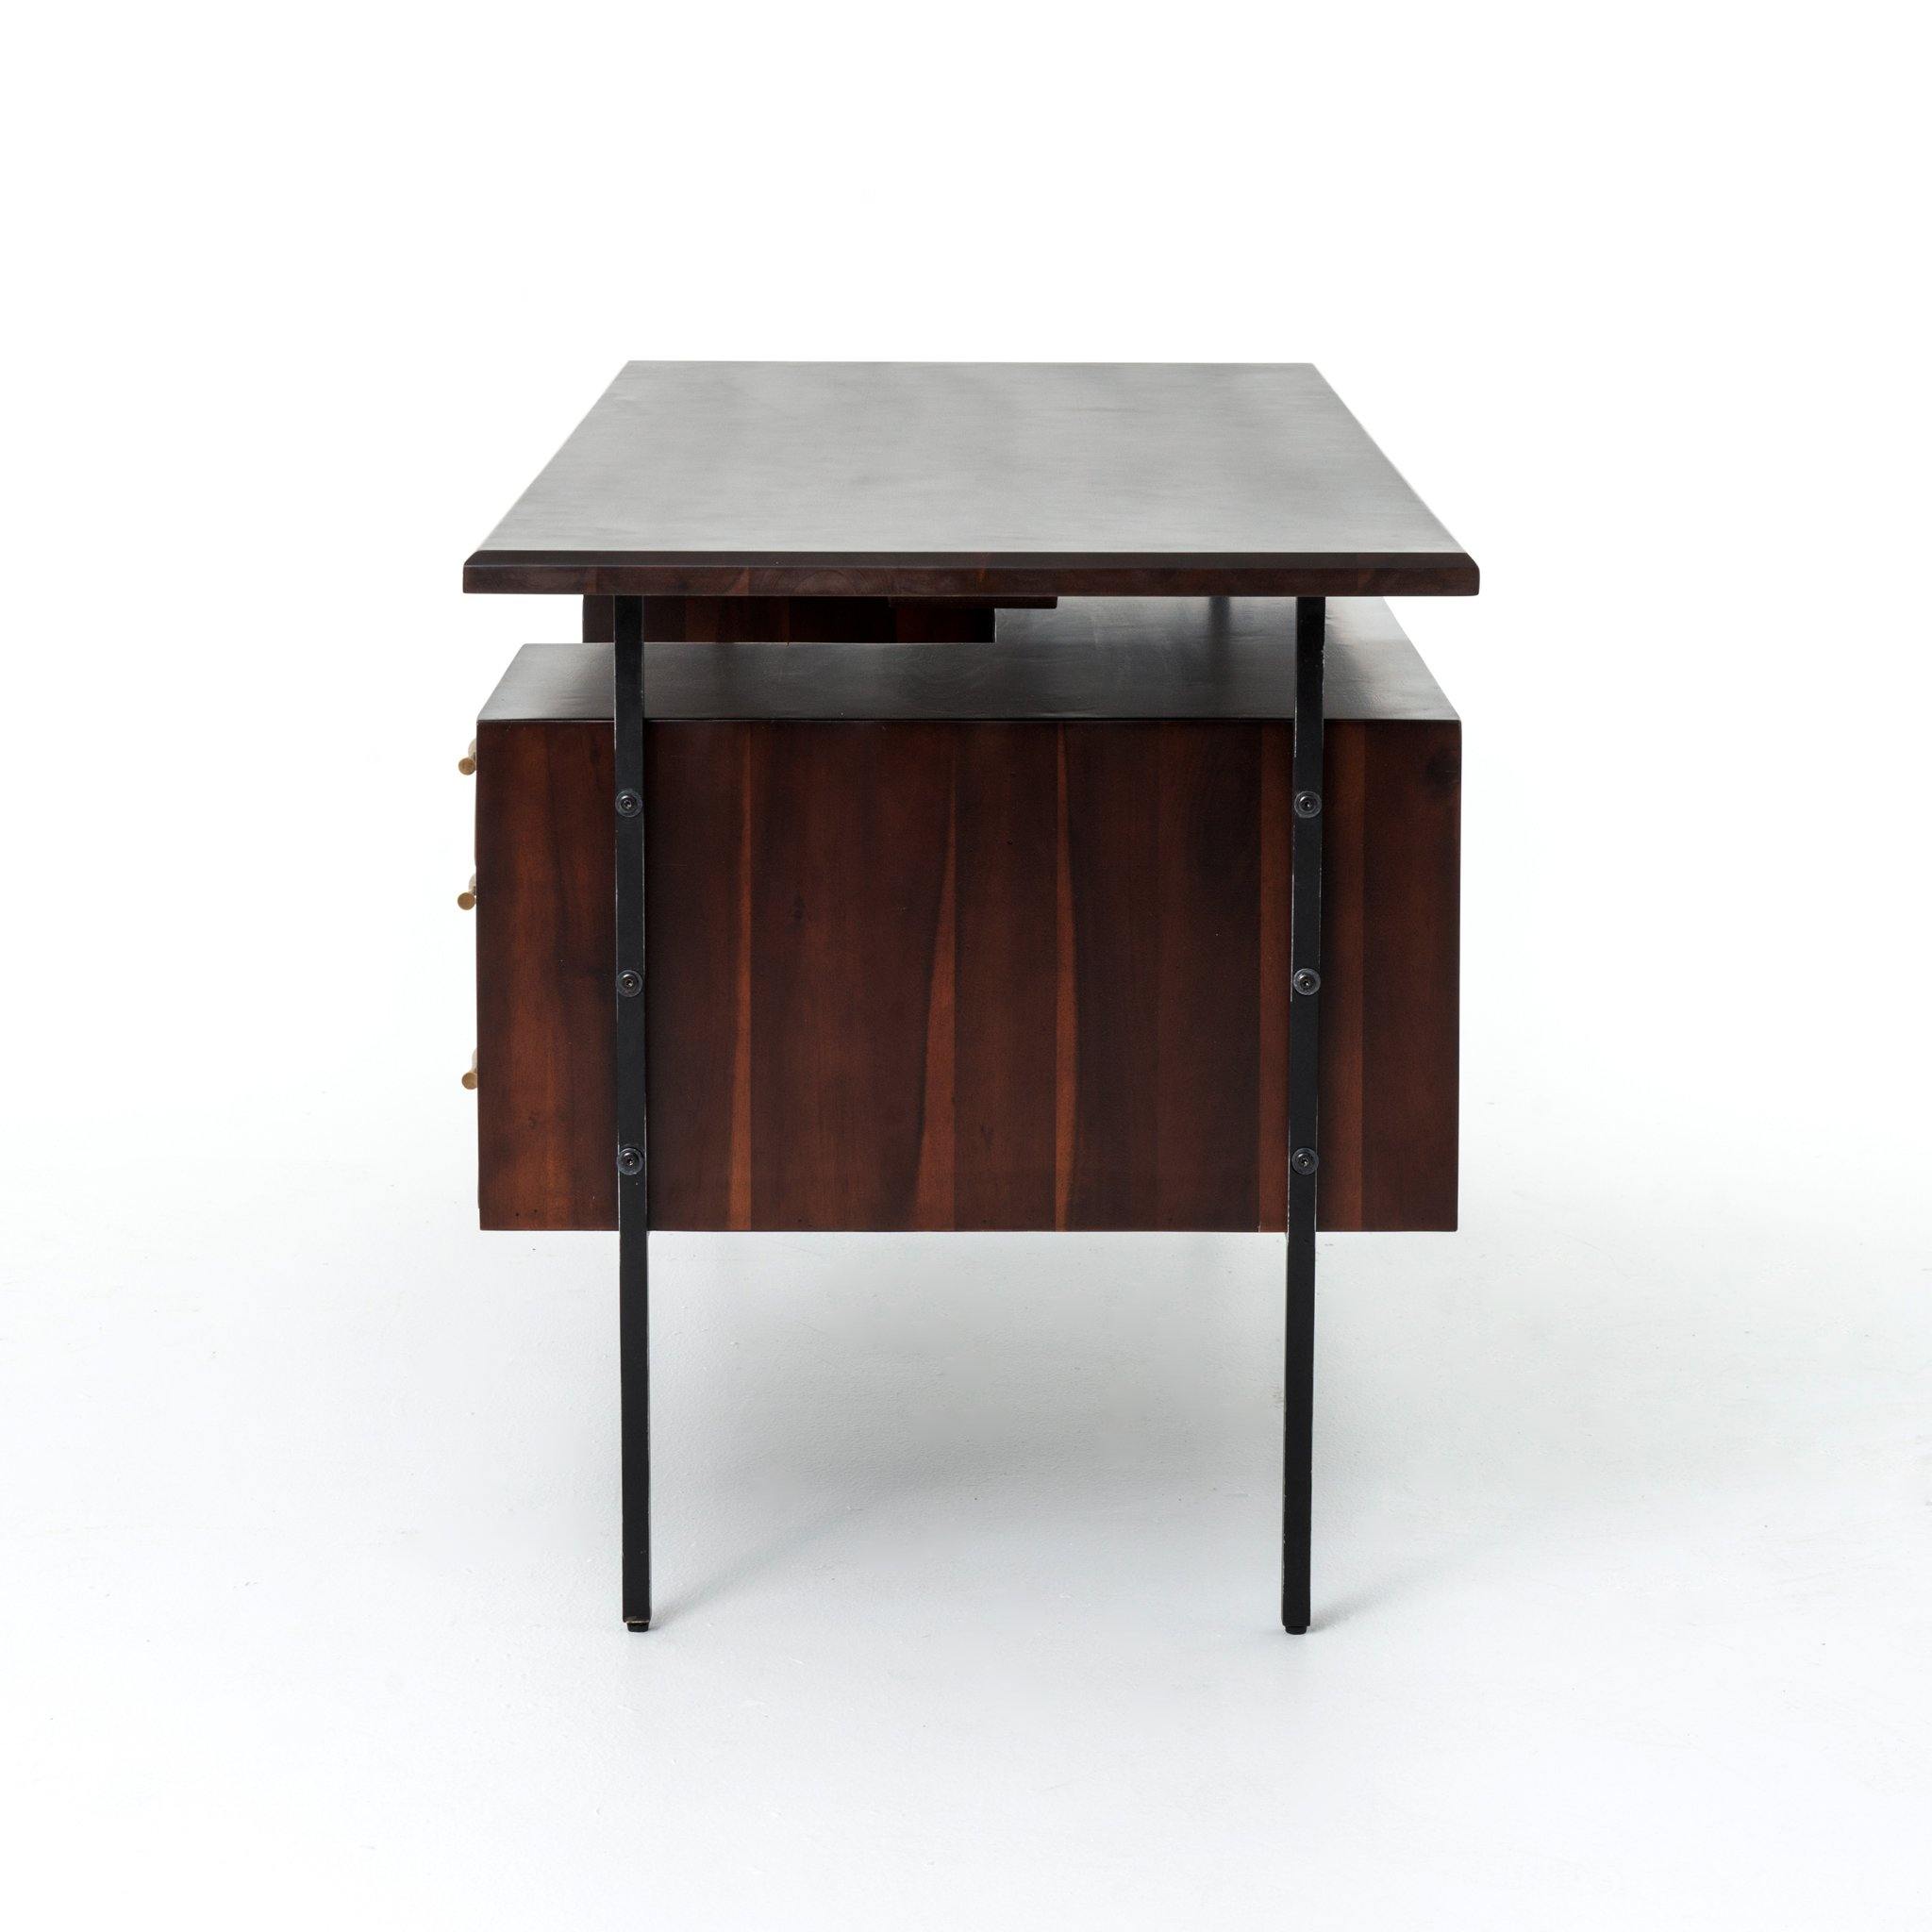 Lauren Lawyer's Desk - Reimagine Designs - Desks